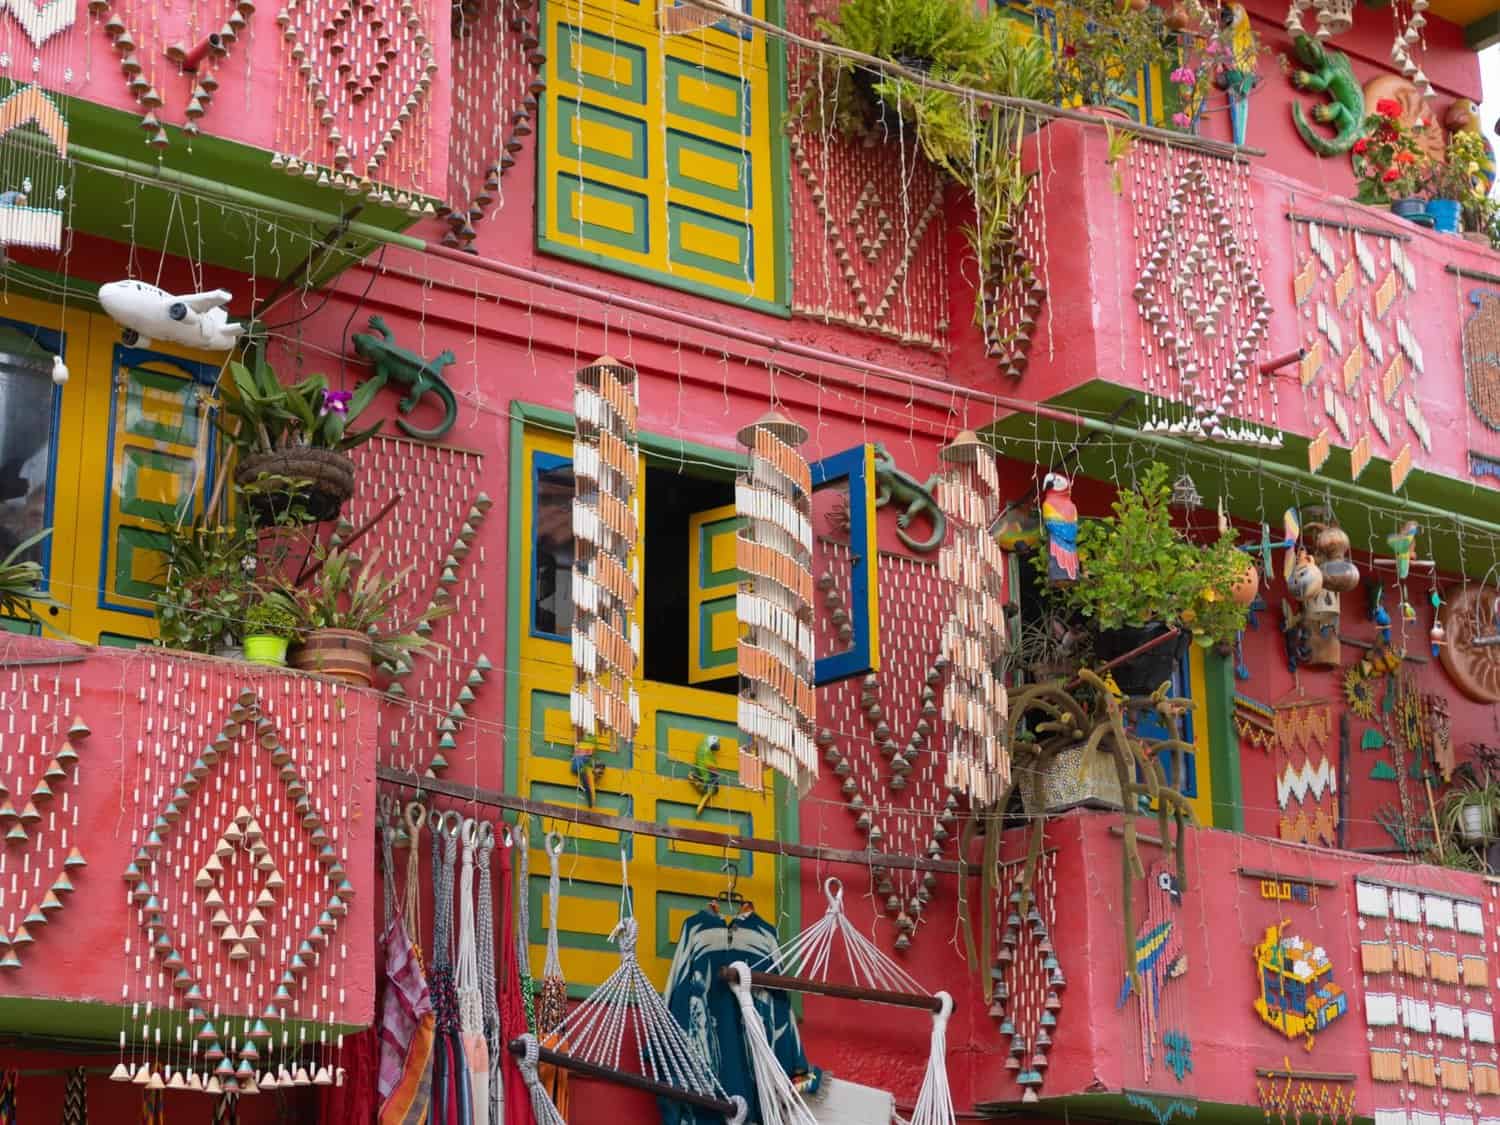 Colorful facades in Raquira